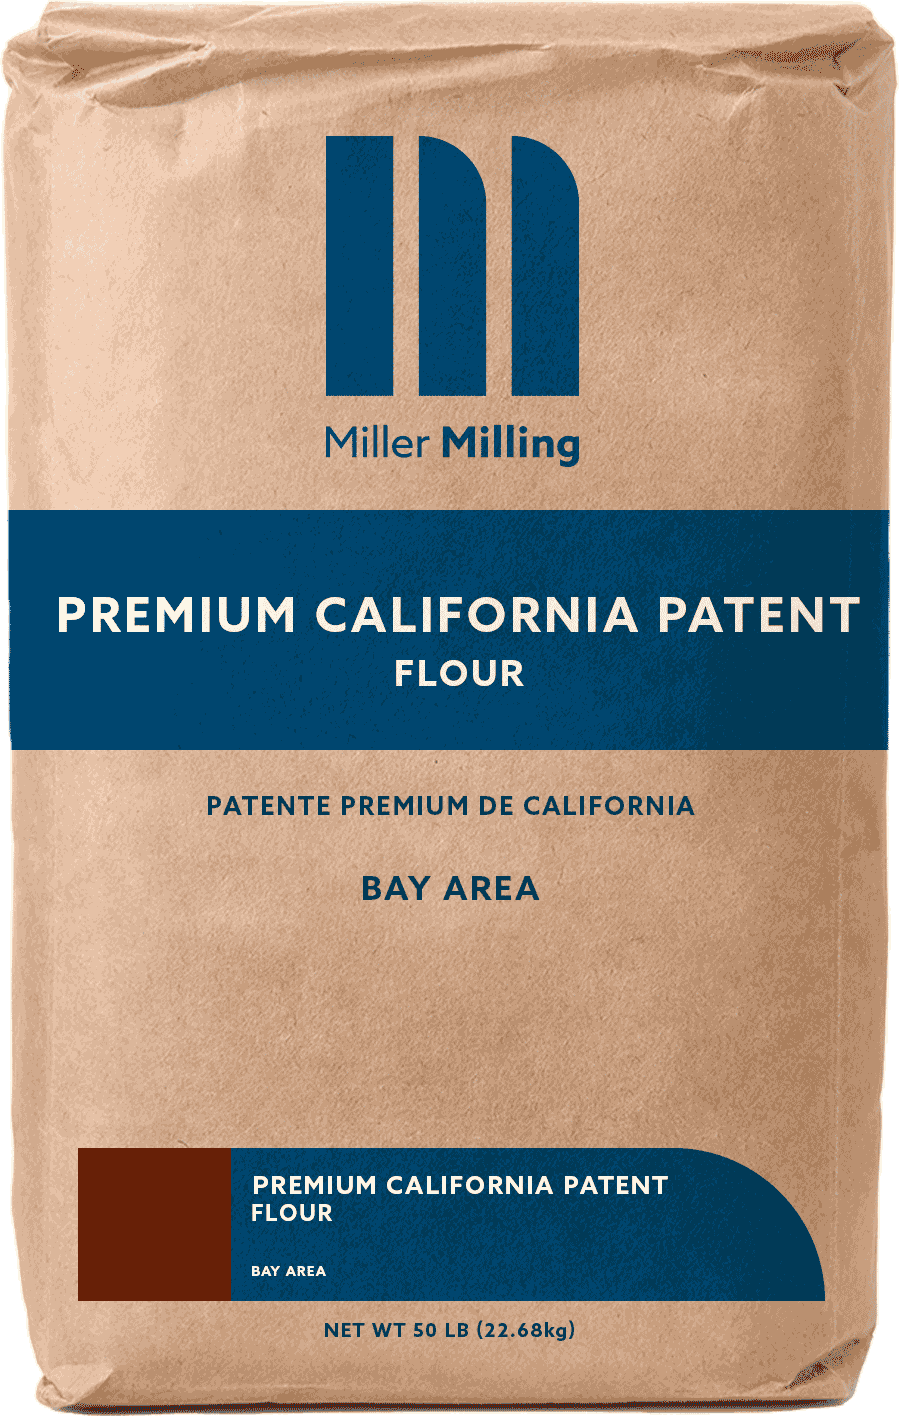 Premium California Patent flour